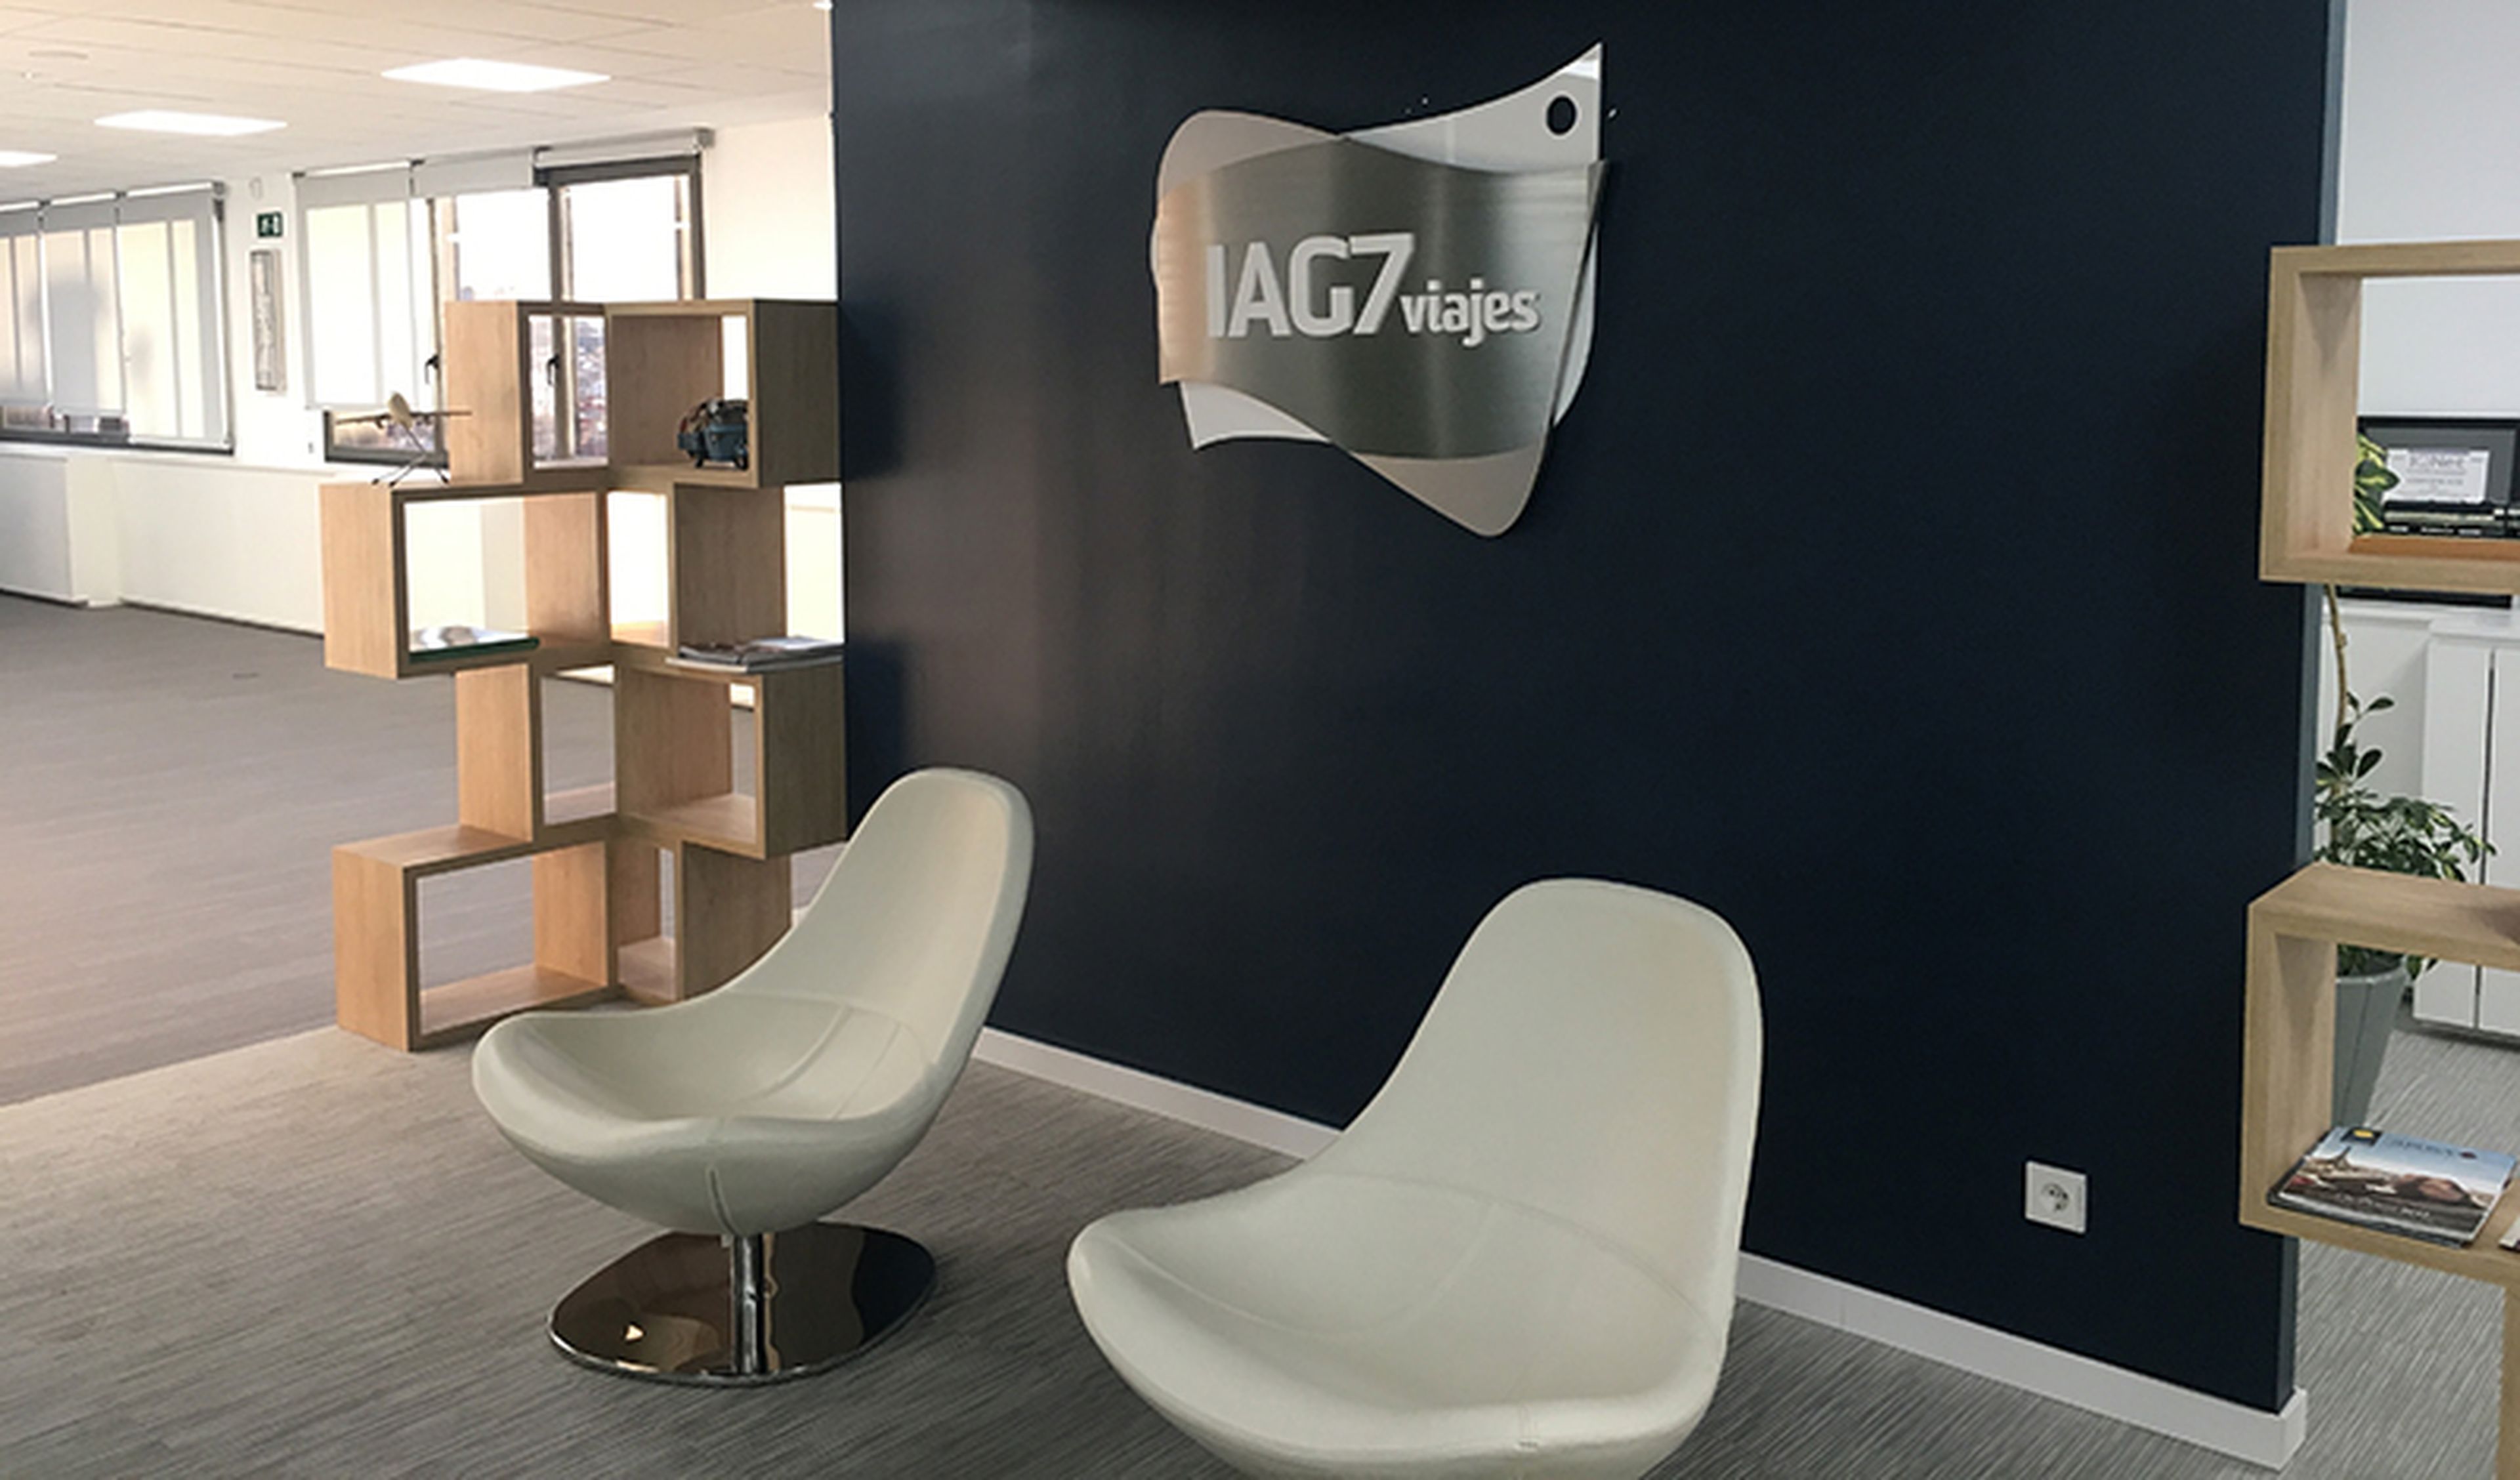 Una oficina de IAG7 Viajes